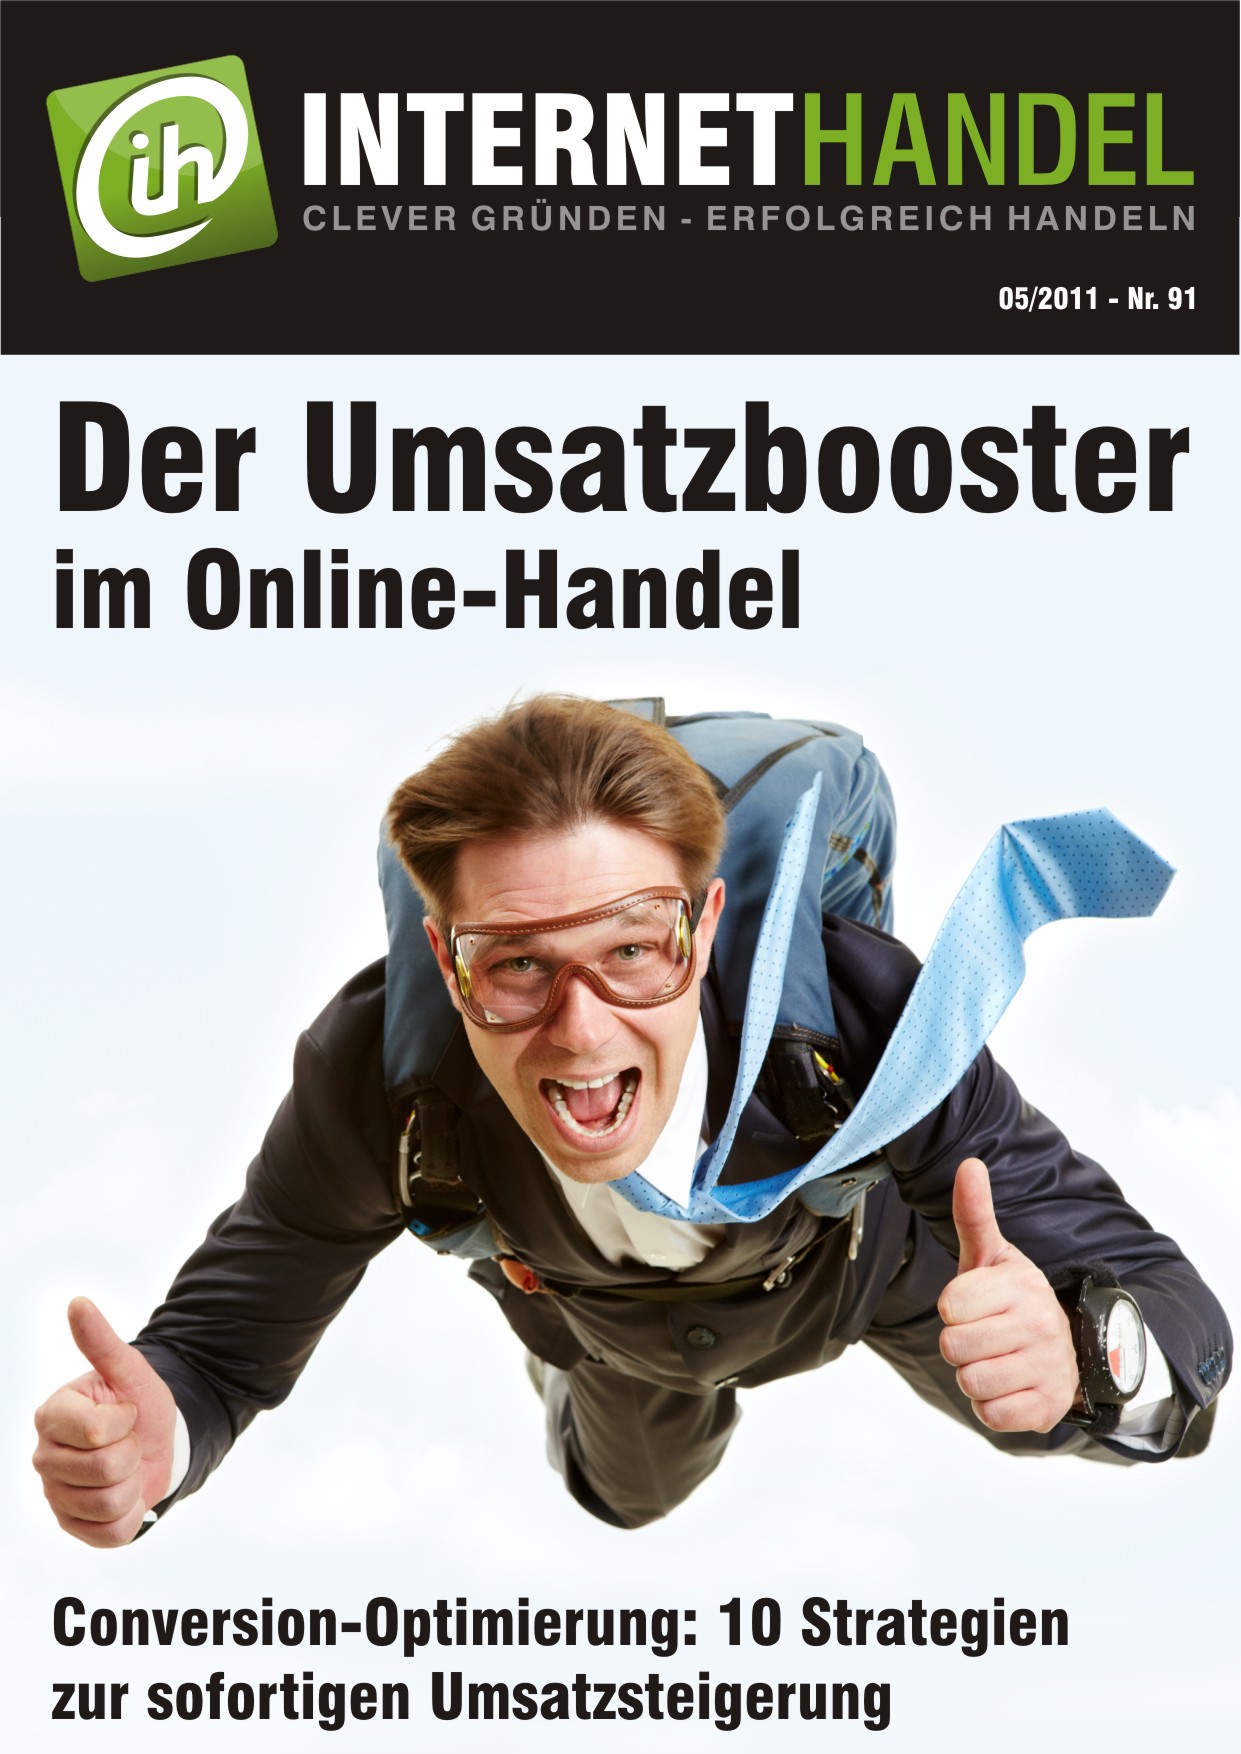 INTERNETHANDEL Titelblatt Nr.91 Mai 2011 - Der Umsatzbooster im Online-Handel